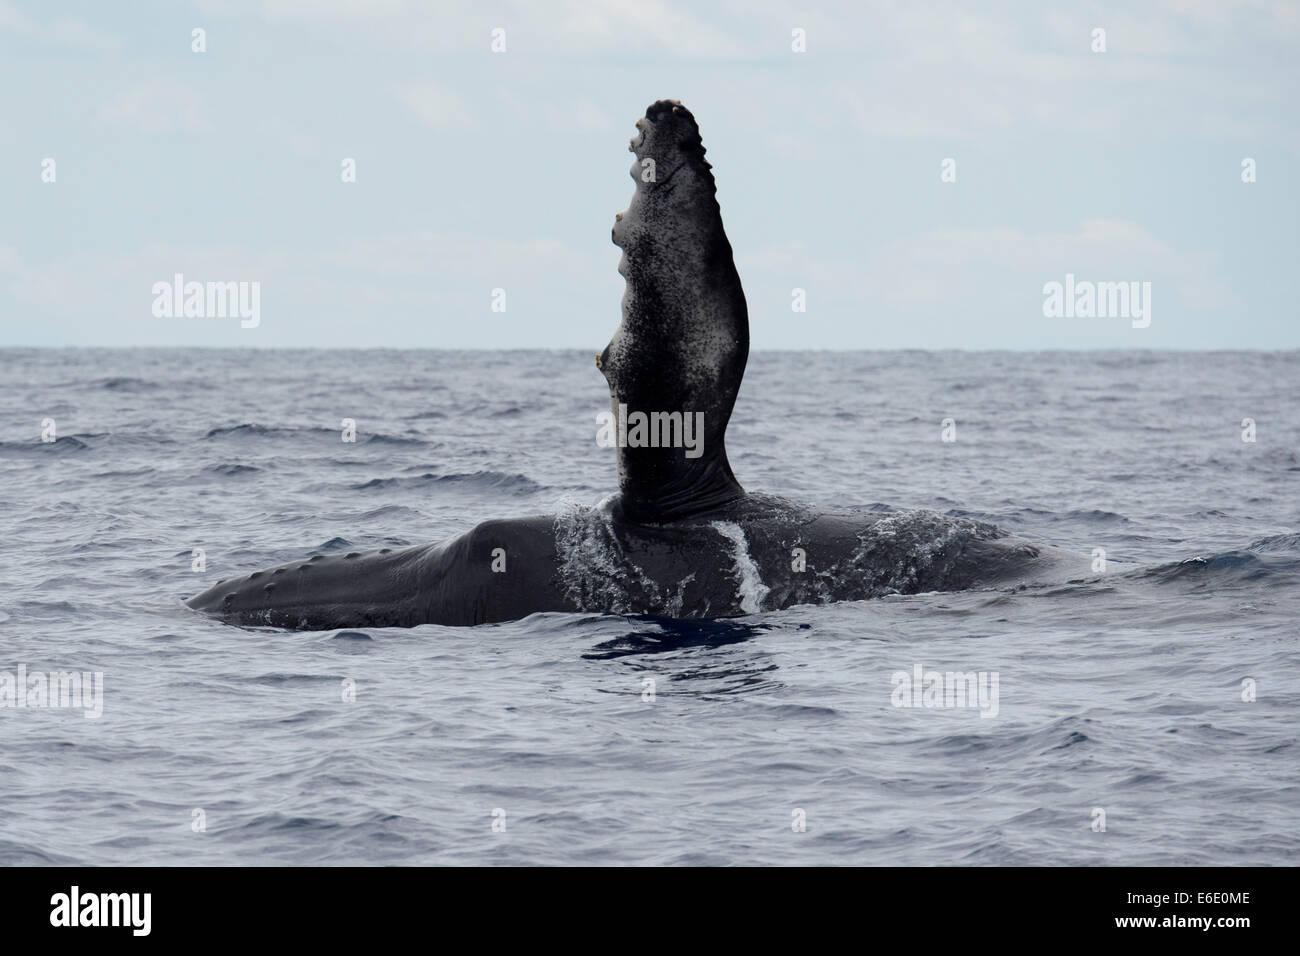 Humpback Whale polpaccio (Megaptera novaeangliae) affiorante con flipper sinistro sollevato. Azzorre, Oceano Atlantico. Foto Stock